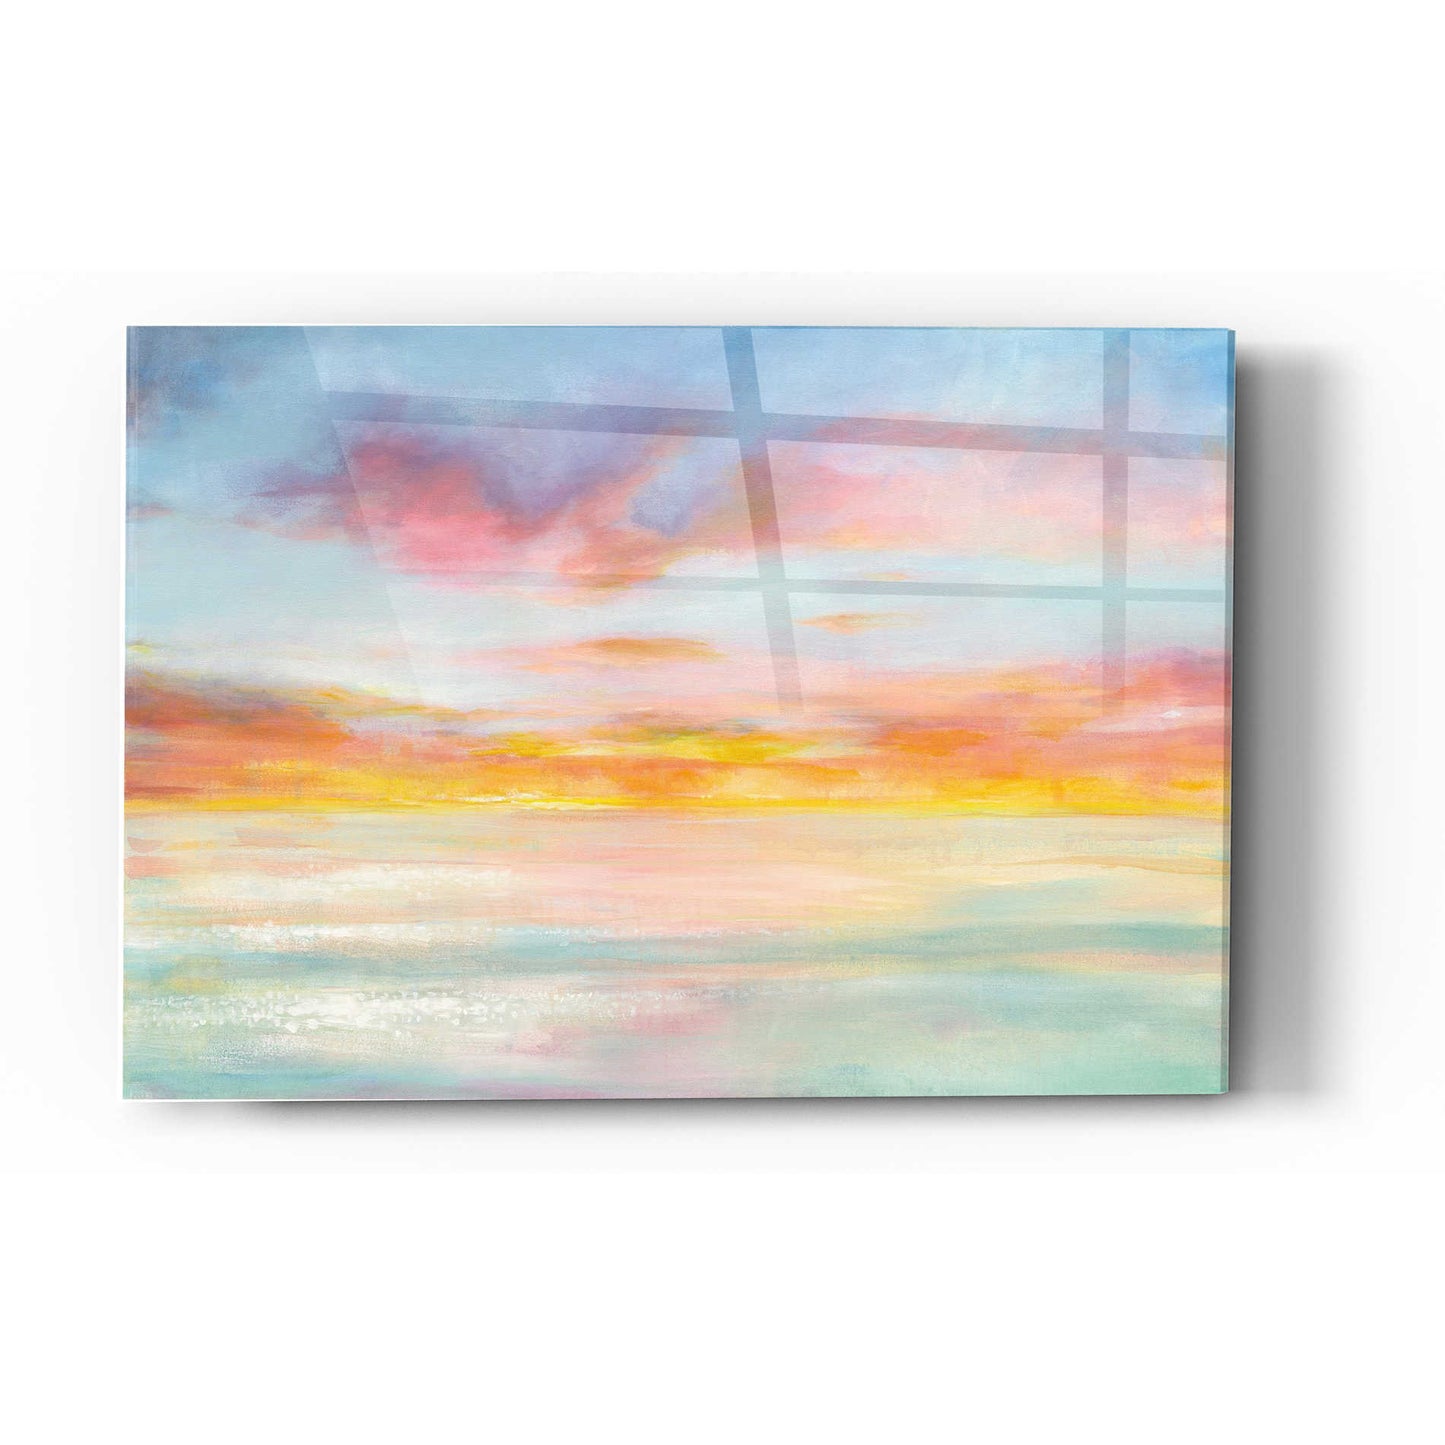 Epic Art 'Pastel Sky' by Danhui Nai, Acrylic Glass Wall Art,16x24